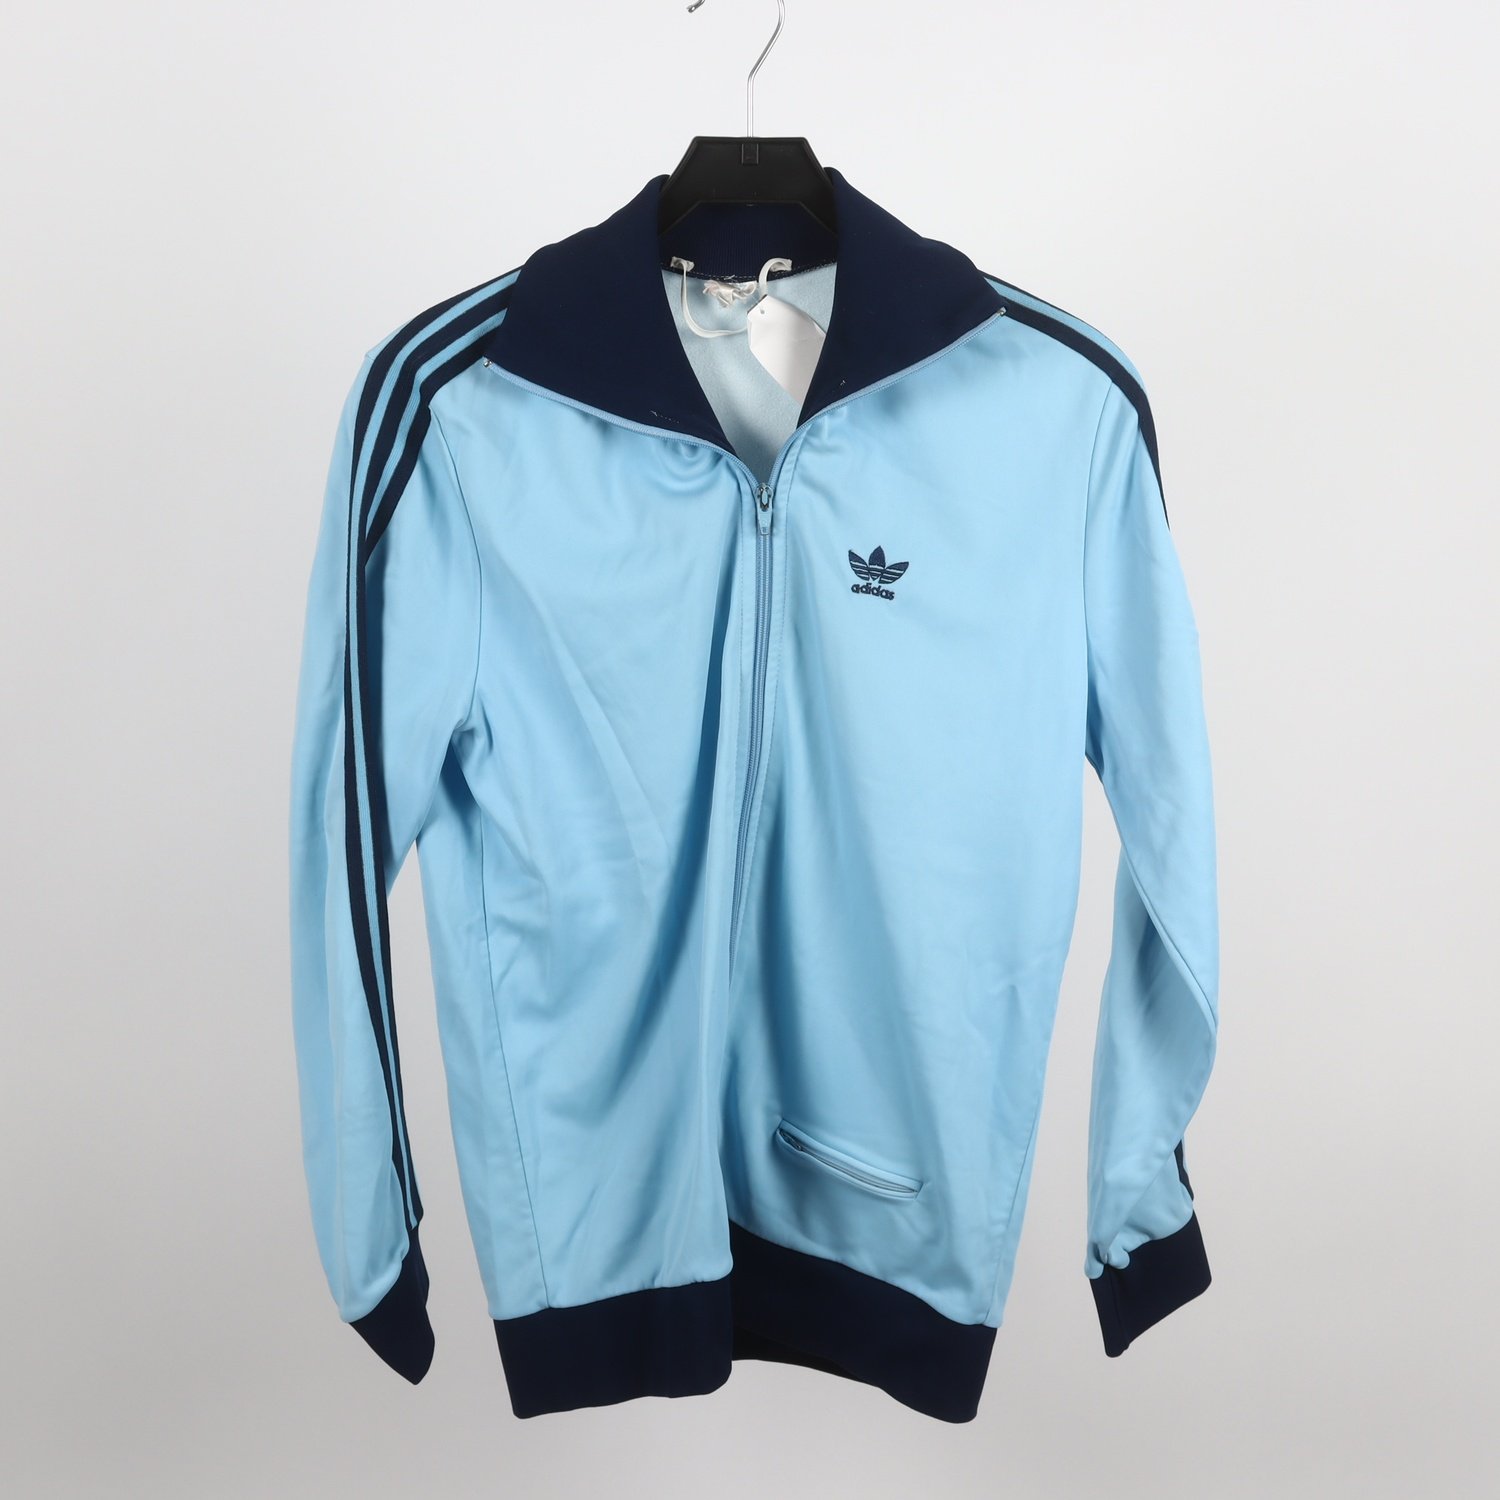 Sportjacka, Adidas, vintage, blå, stl. 180 (S)